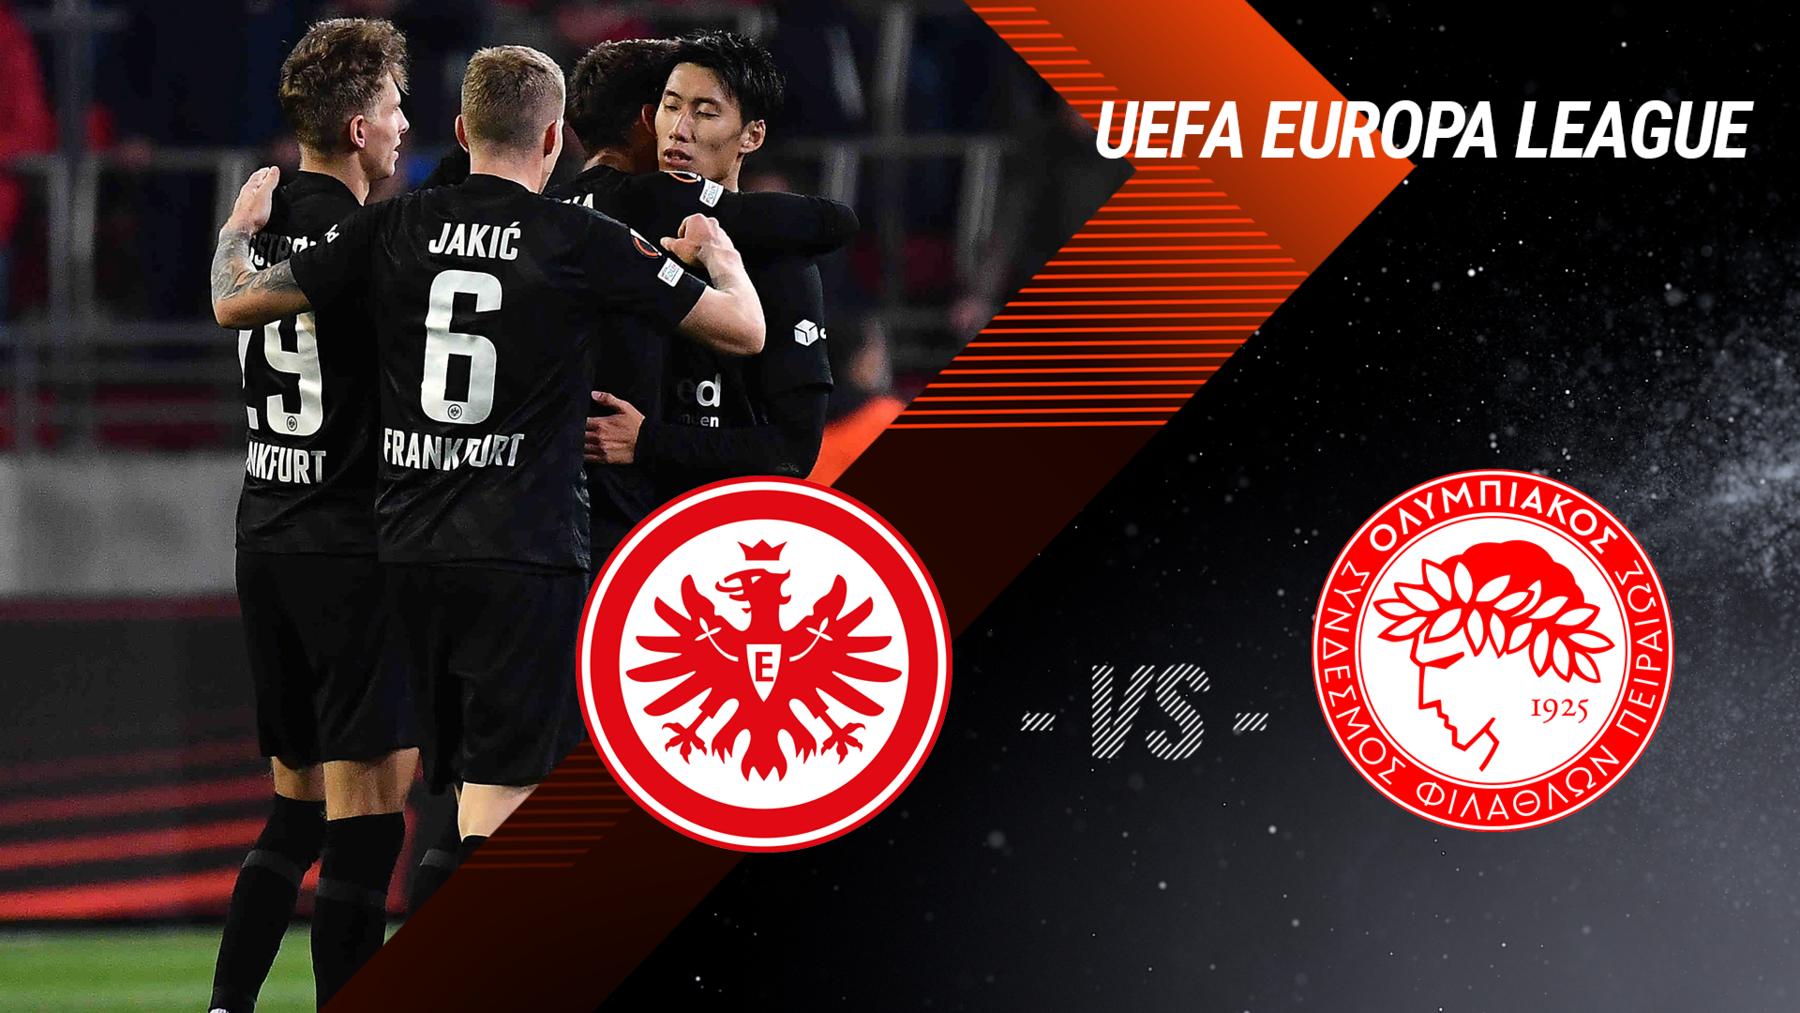 Matchday 3: Eintracht Frankfurt vs. Olympiakos Piräus